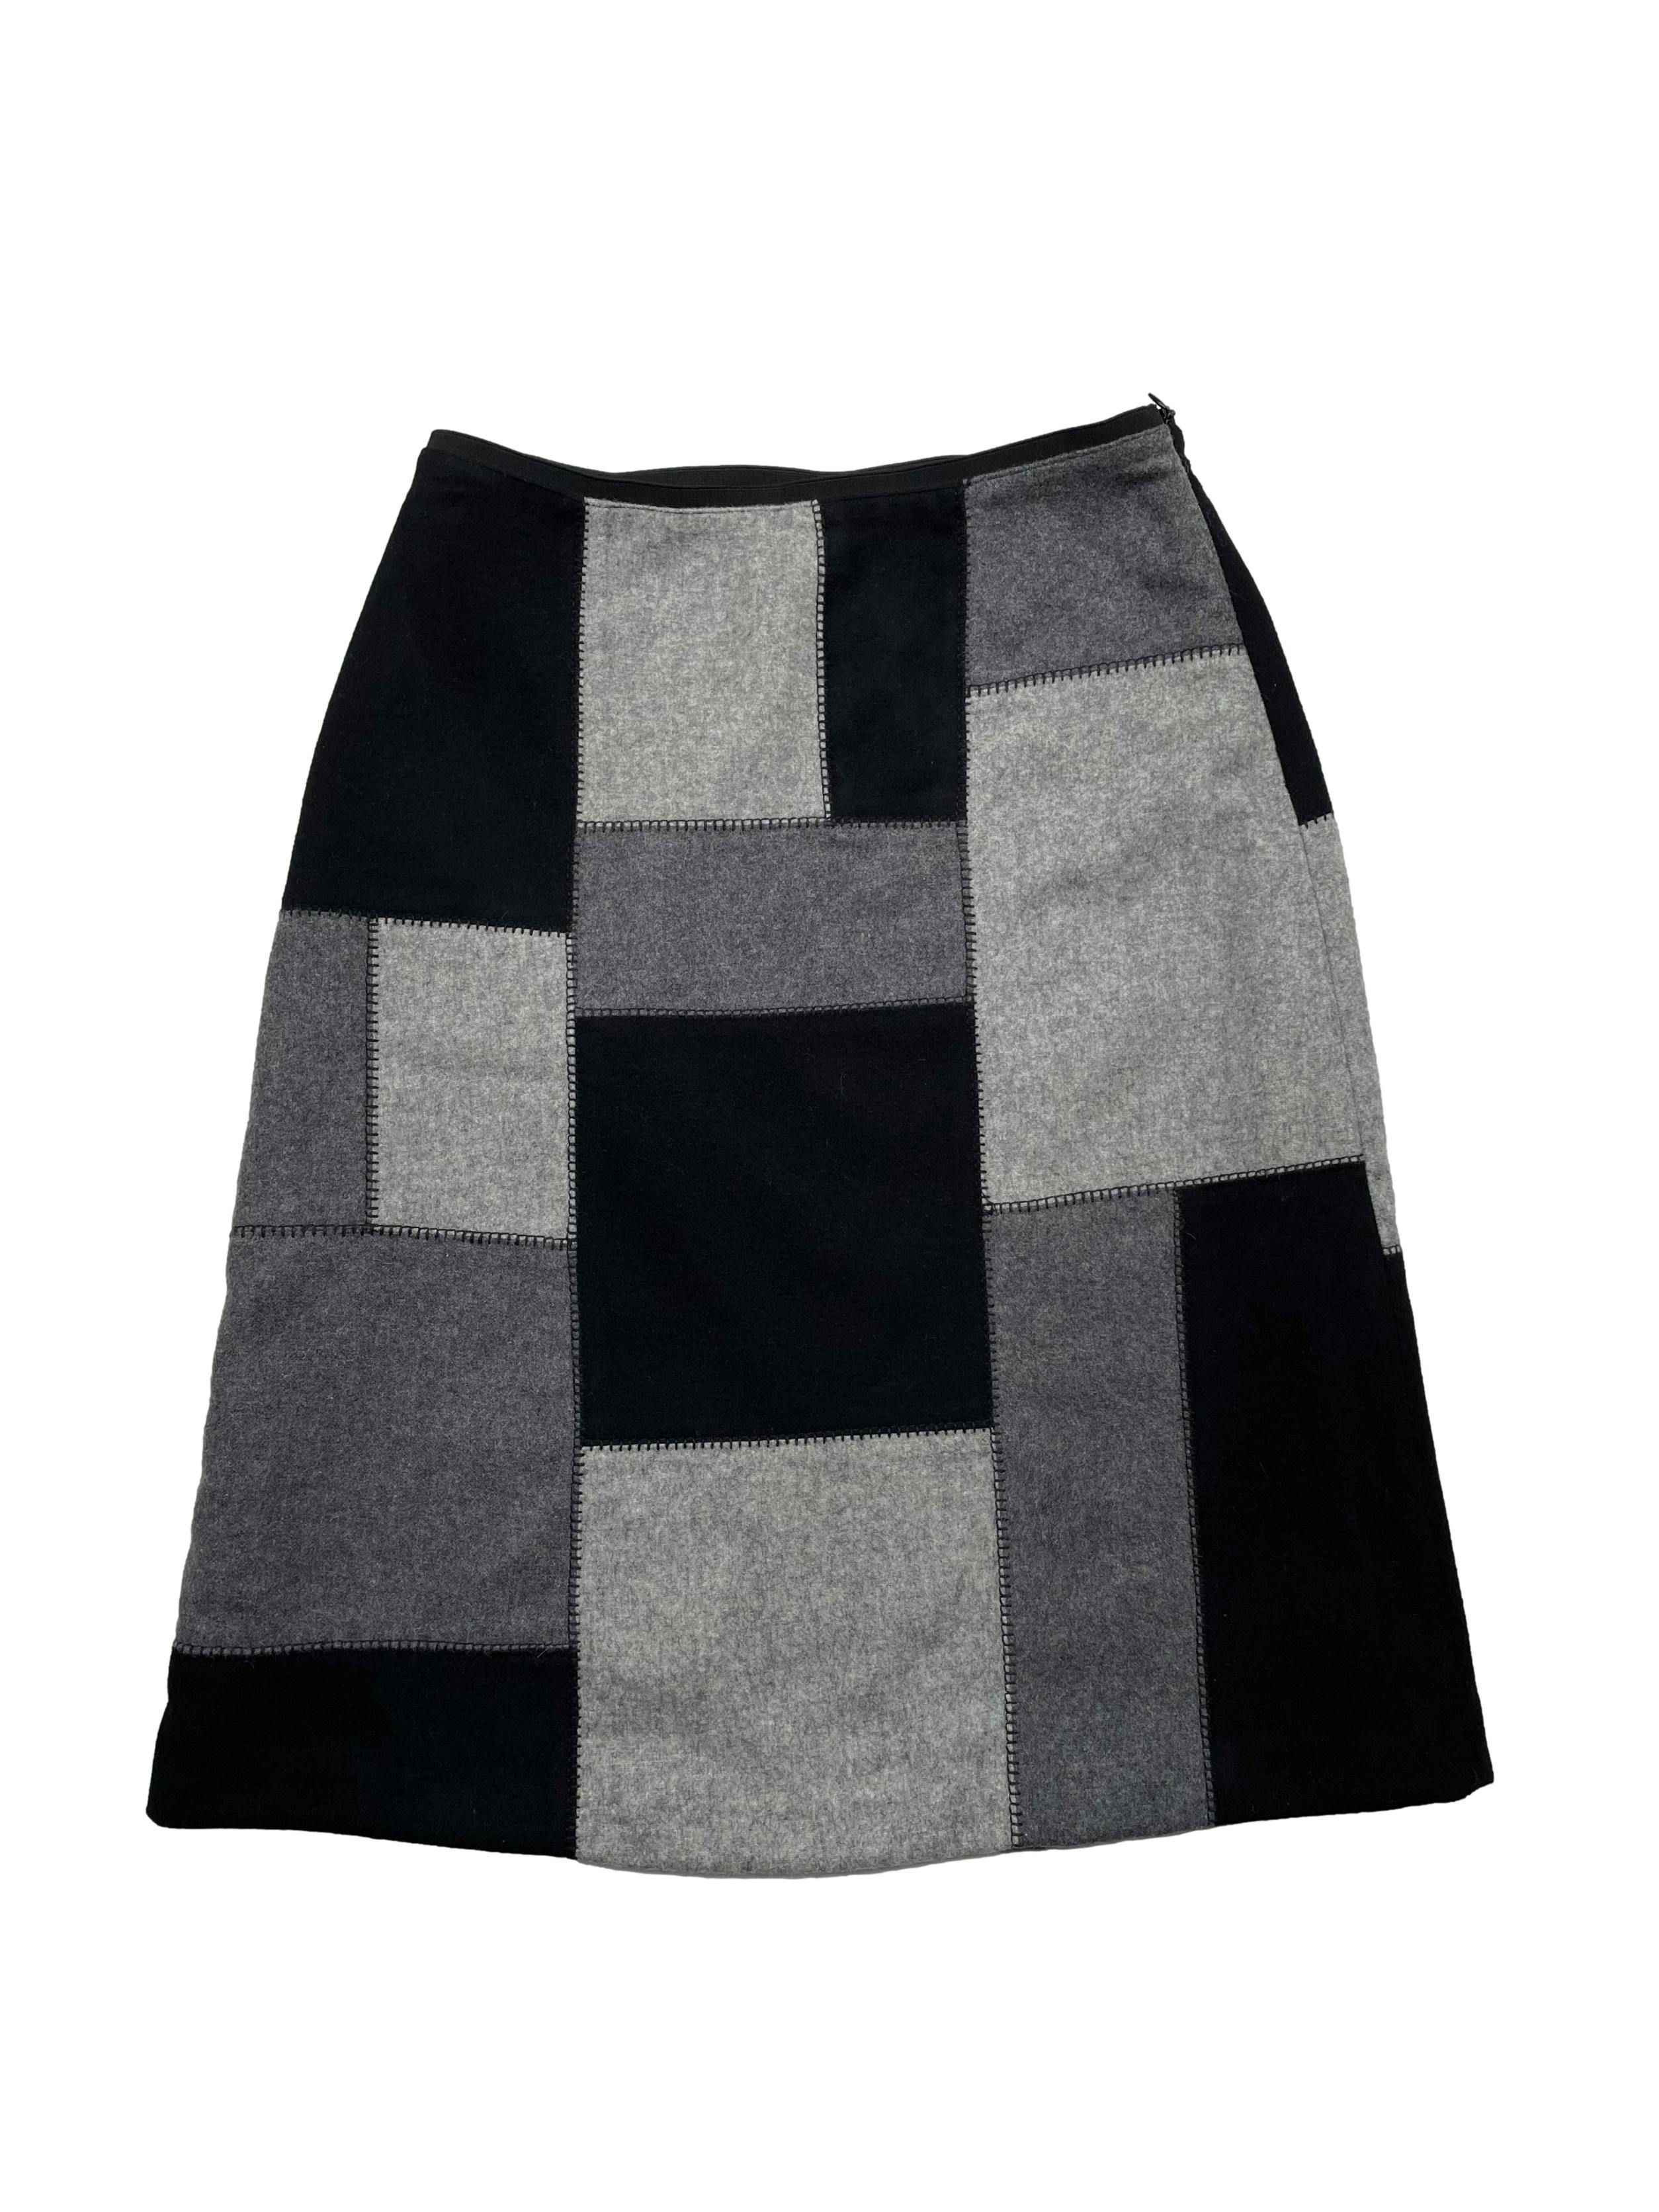 Falda The Limited patchwork en gris y negro 70% de lana reciclada, con forro y cierre lateral. Cintura 68cm, Largo 63cm.